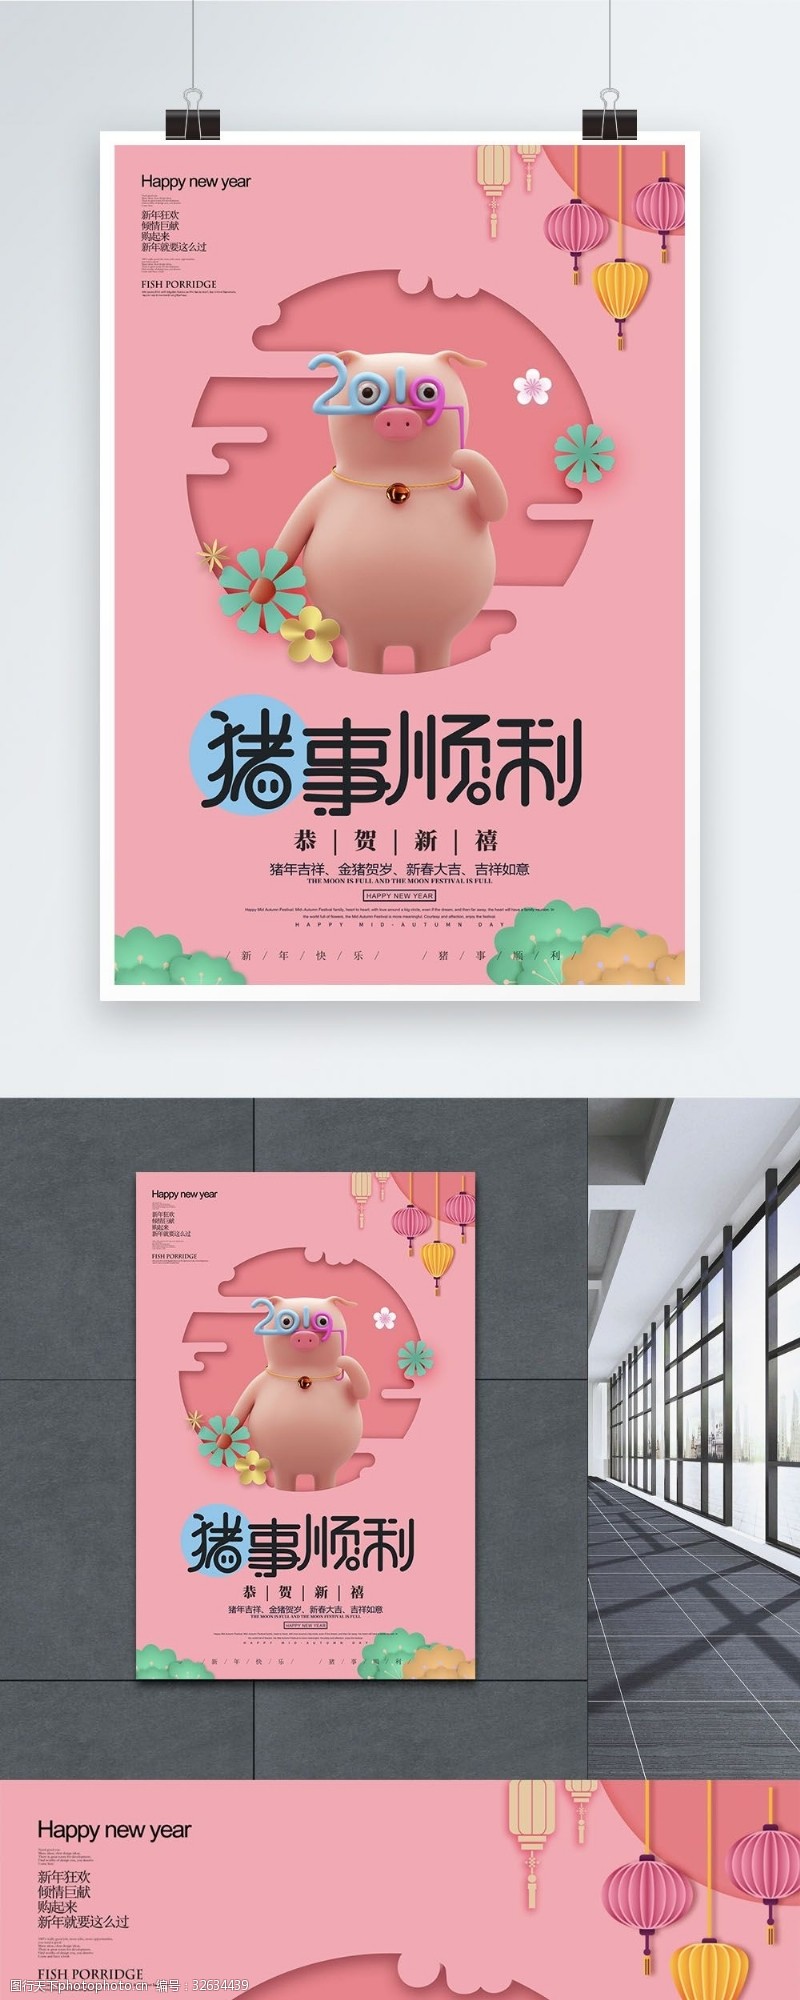 猪年祝福粉色清新猪事顺利新年愿望节日海报